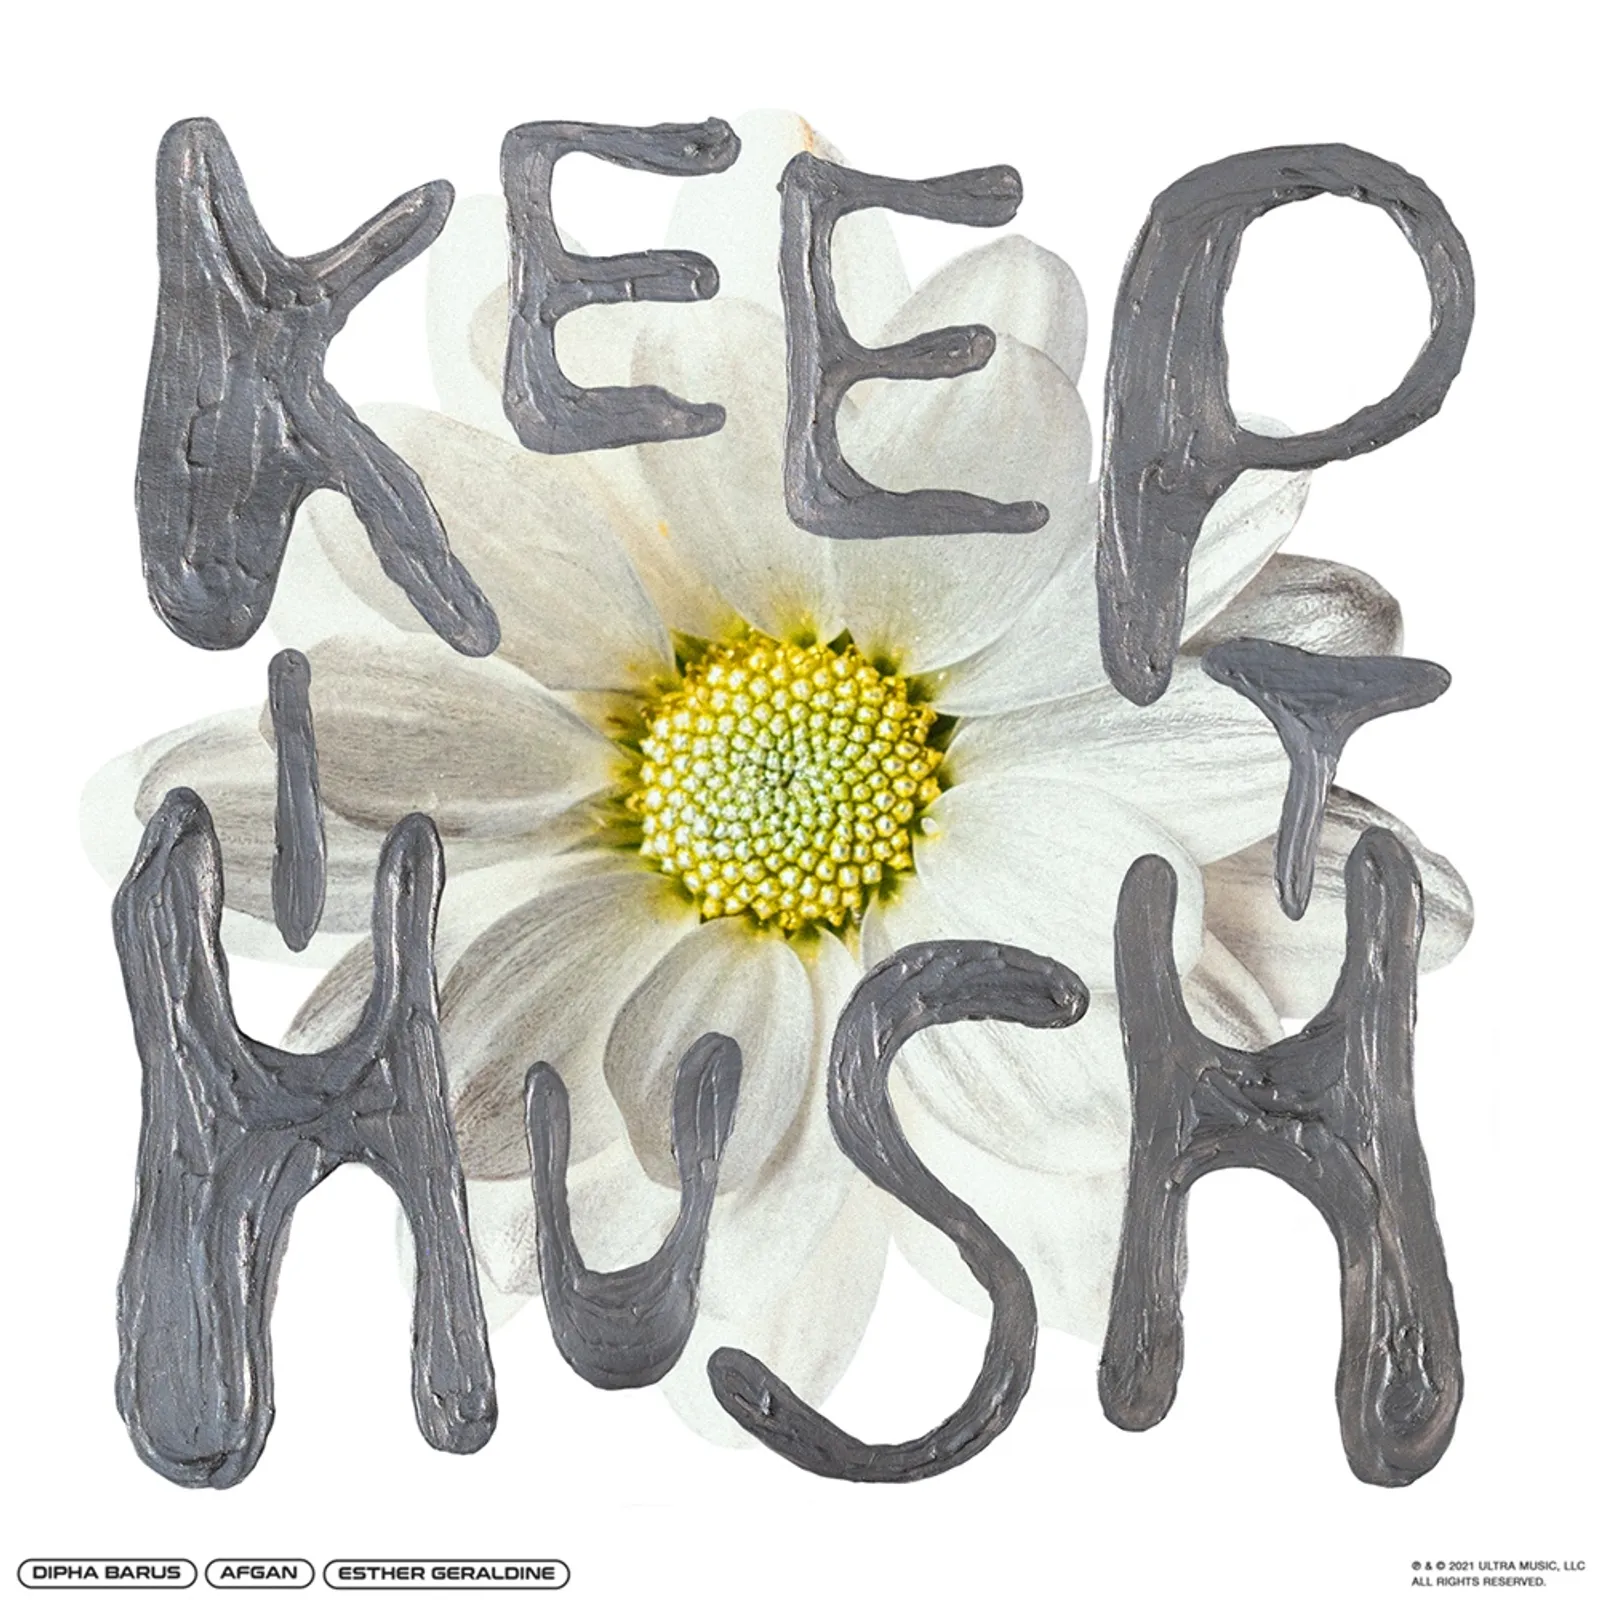 "Keep it Hush", Pesan Dipha Barus untuk Hati-Hati di Media Sosial